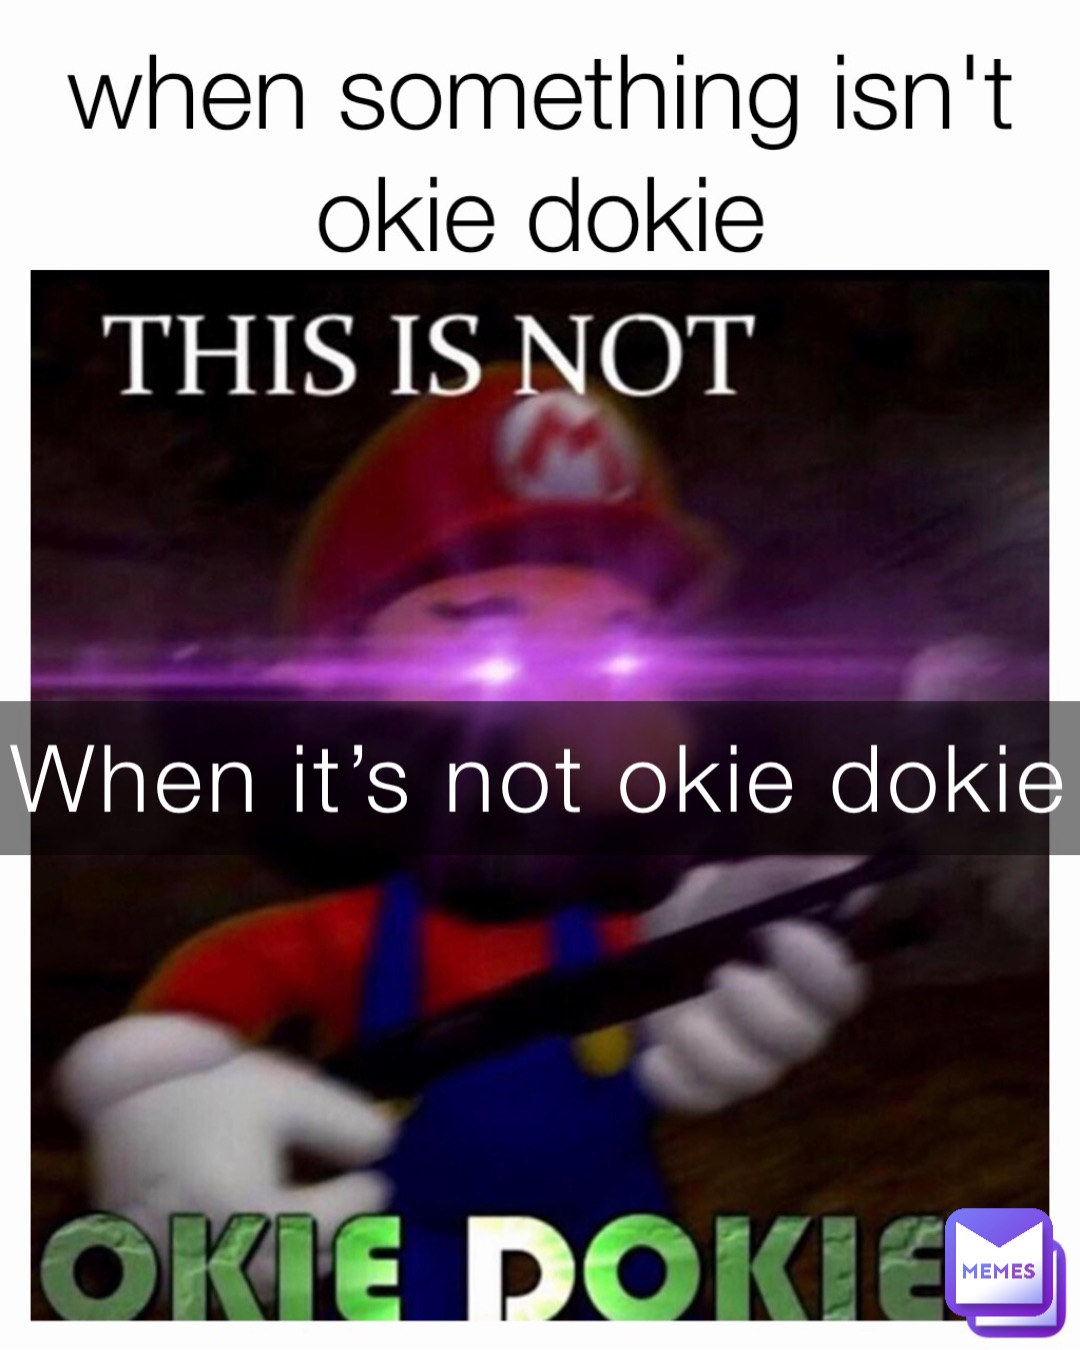 When it’s not okie dokie